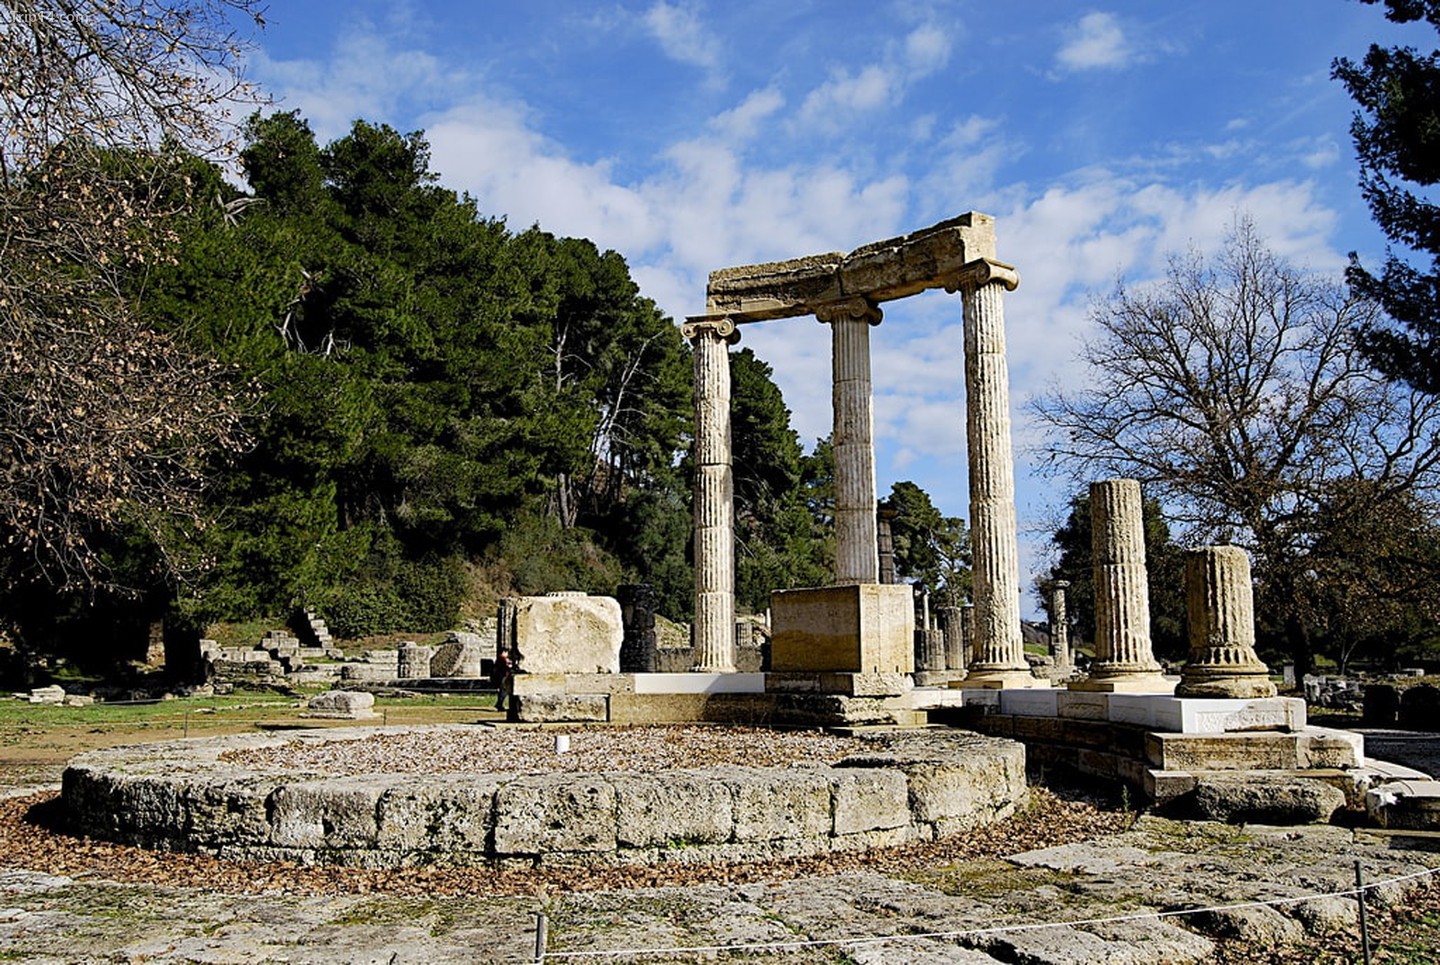  Đài tưởng niệm Philip II, Philippeion, Olympia, Hy Lạp   |   